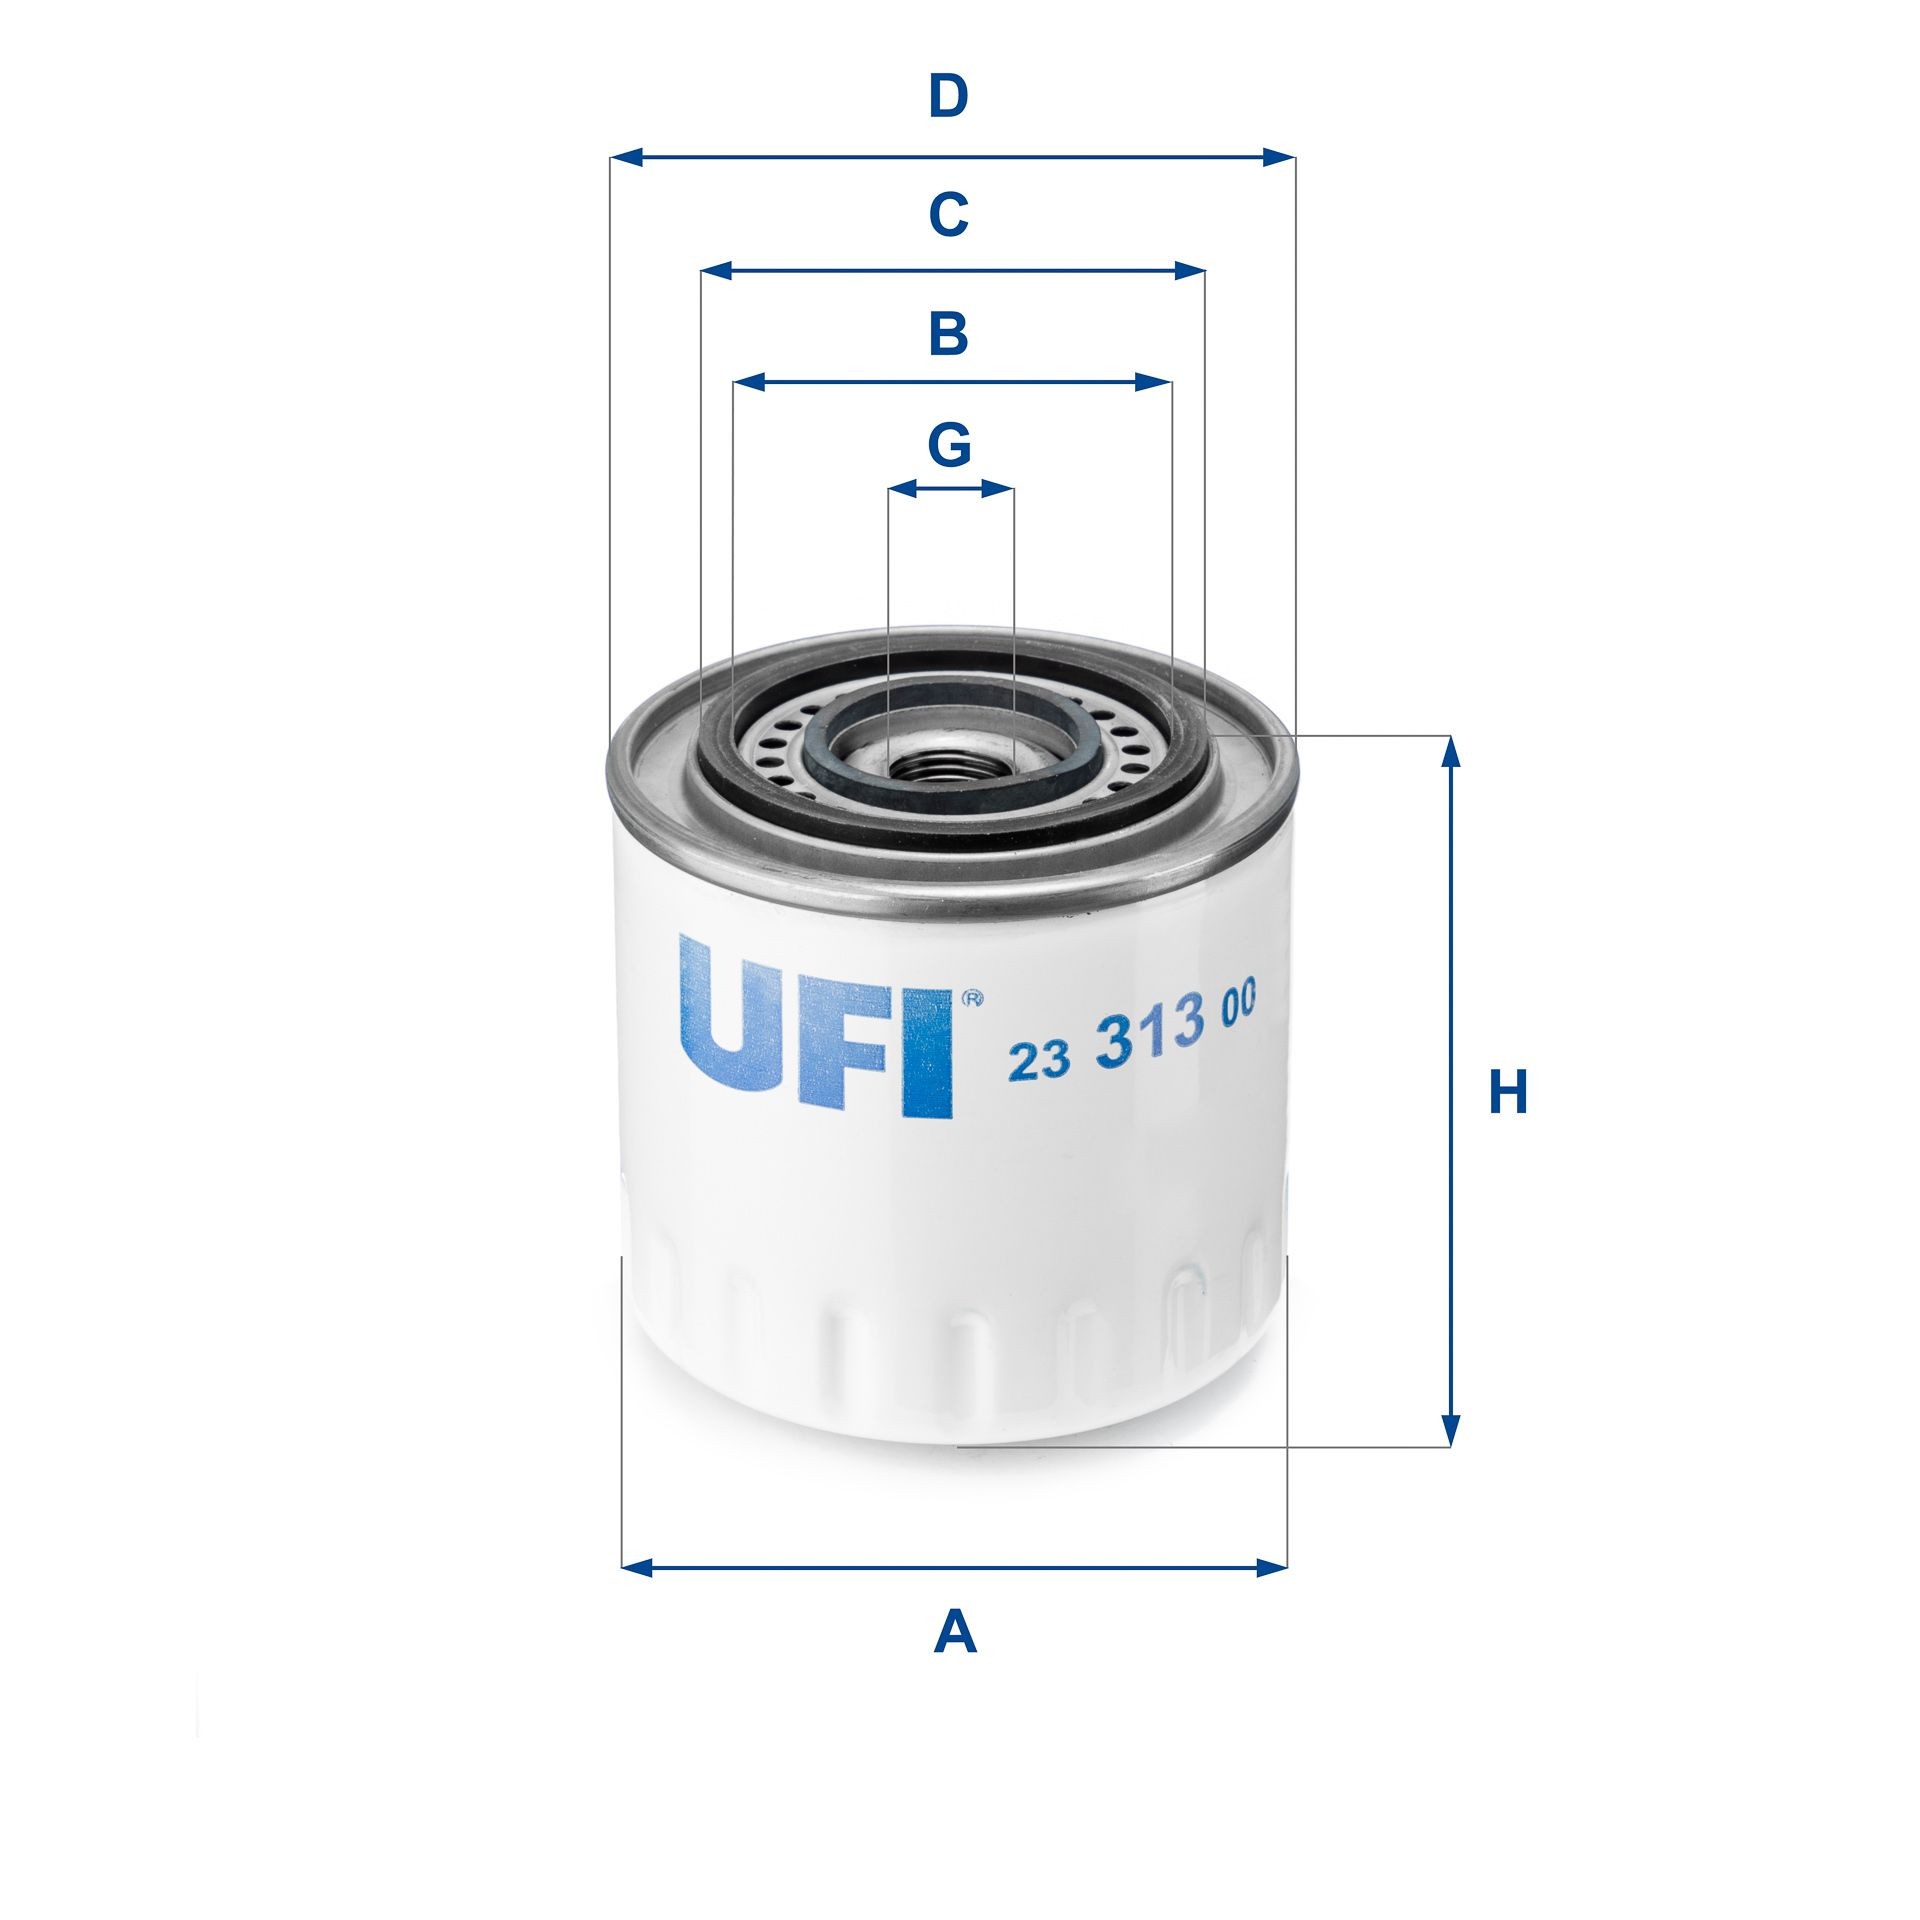 UFI Olejovy filtr Daihatsu 23.313.00 v originální kvalitě